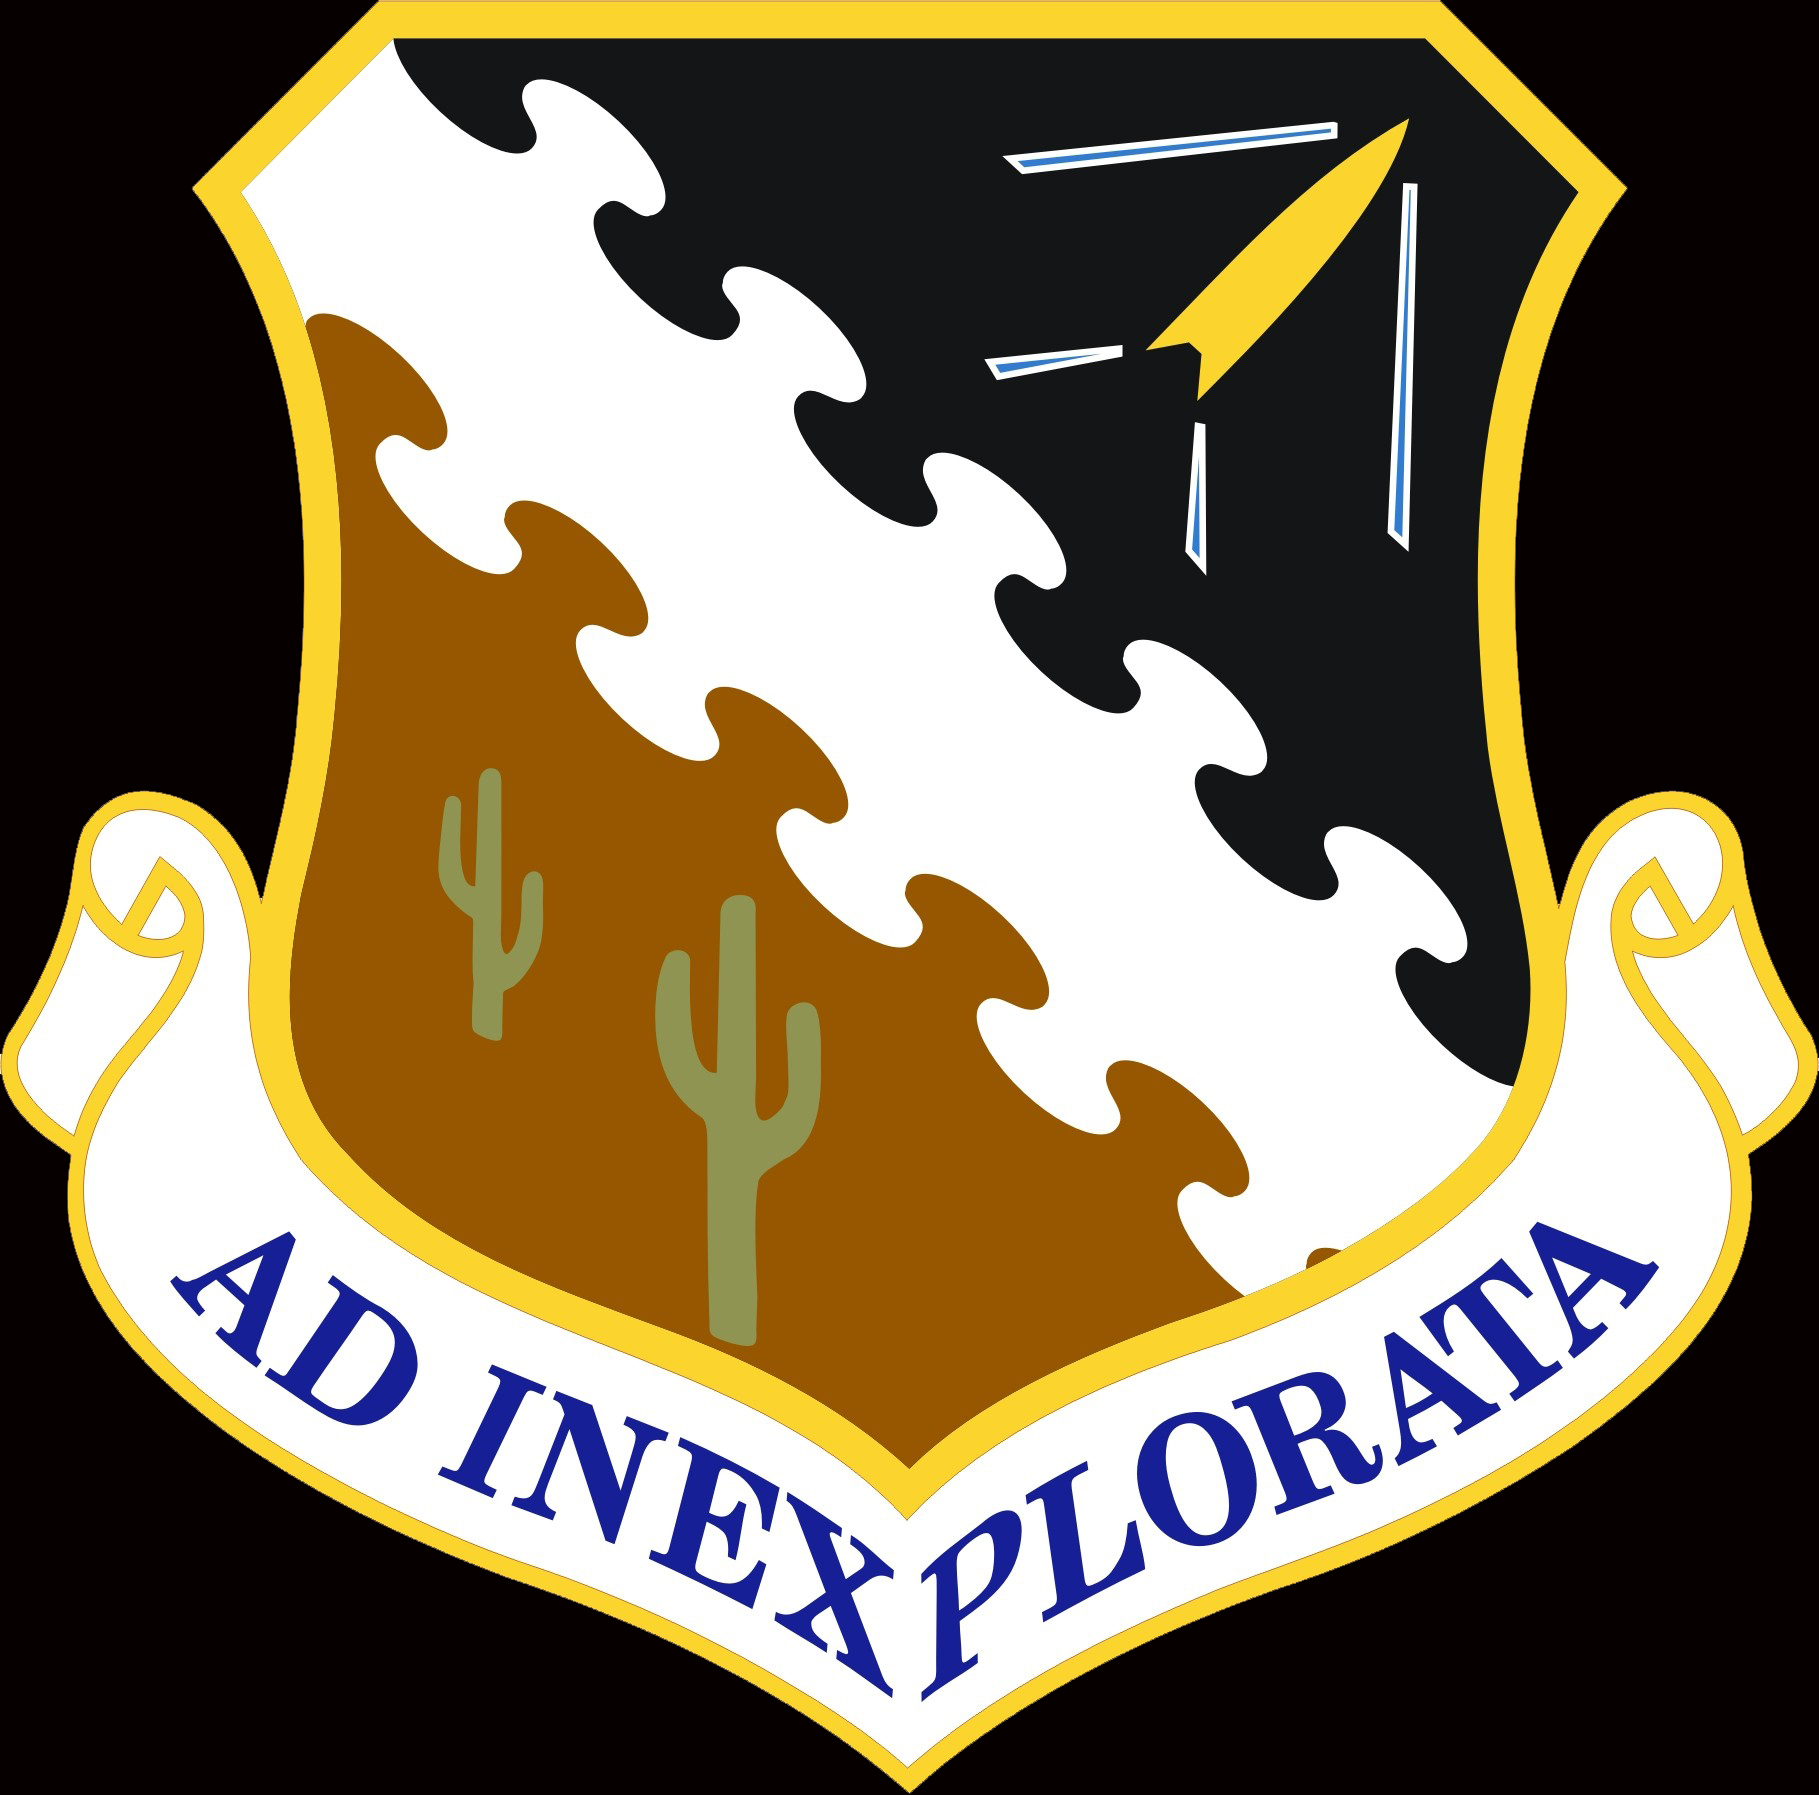  Edwards Air Force base logo. 